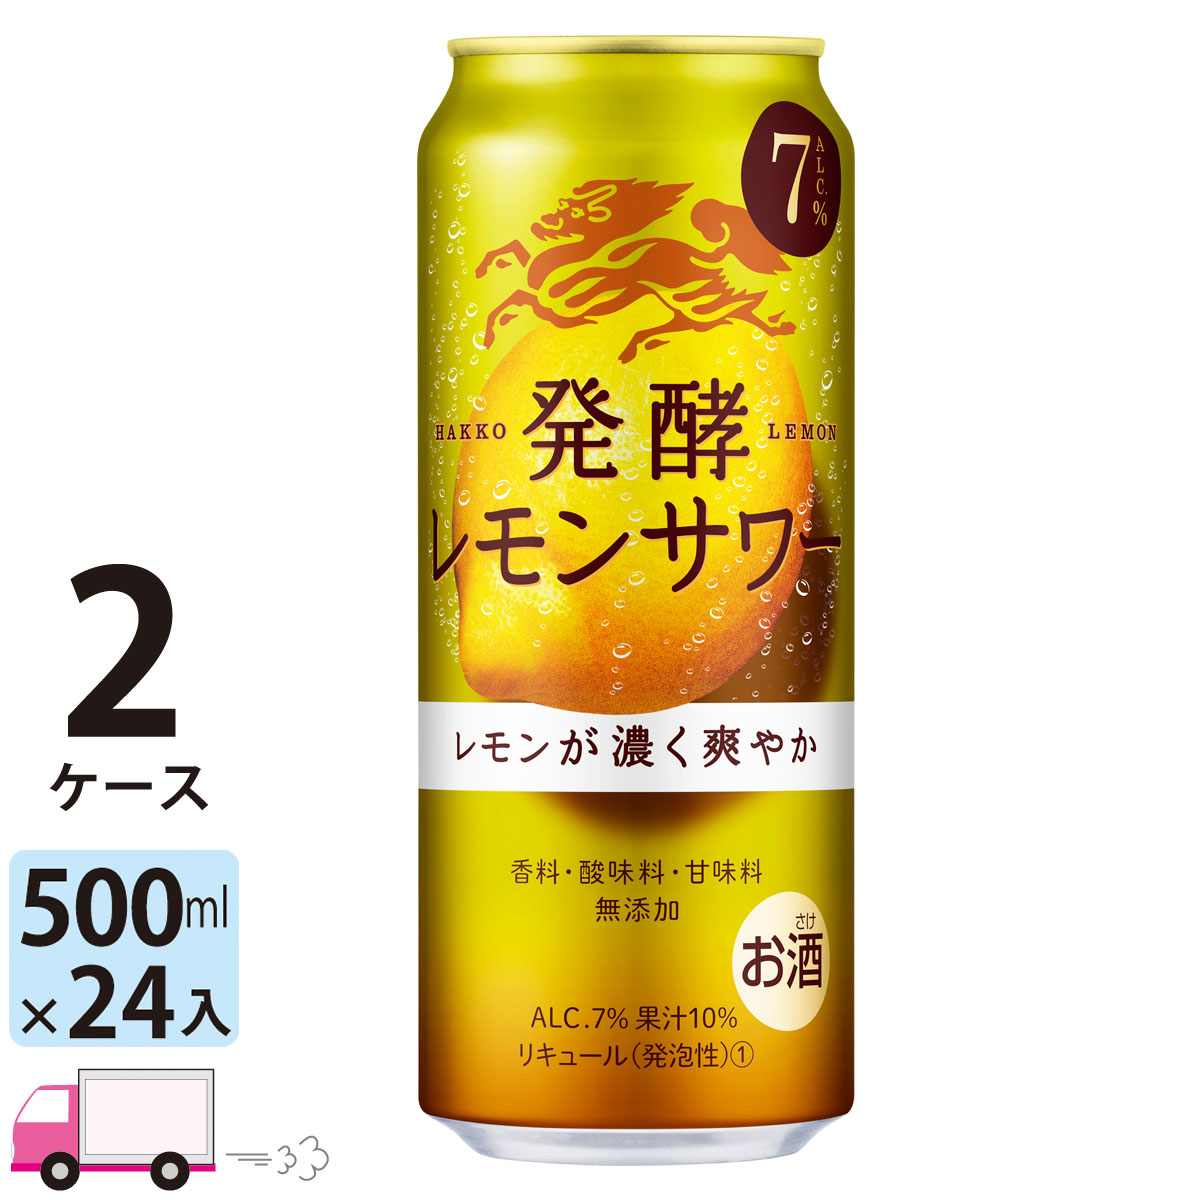 大流行中 キリン 麒麟 発酵レモンサワー 500ml缶 2ケース 48本入り 送料無料 Asiasecurities Net